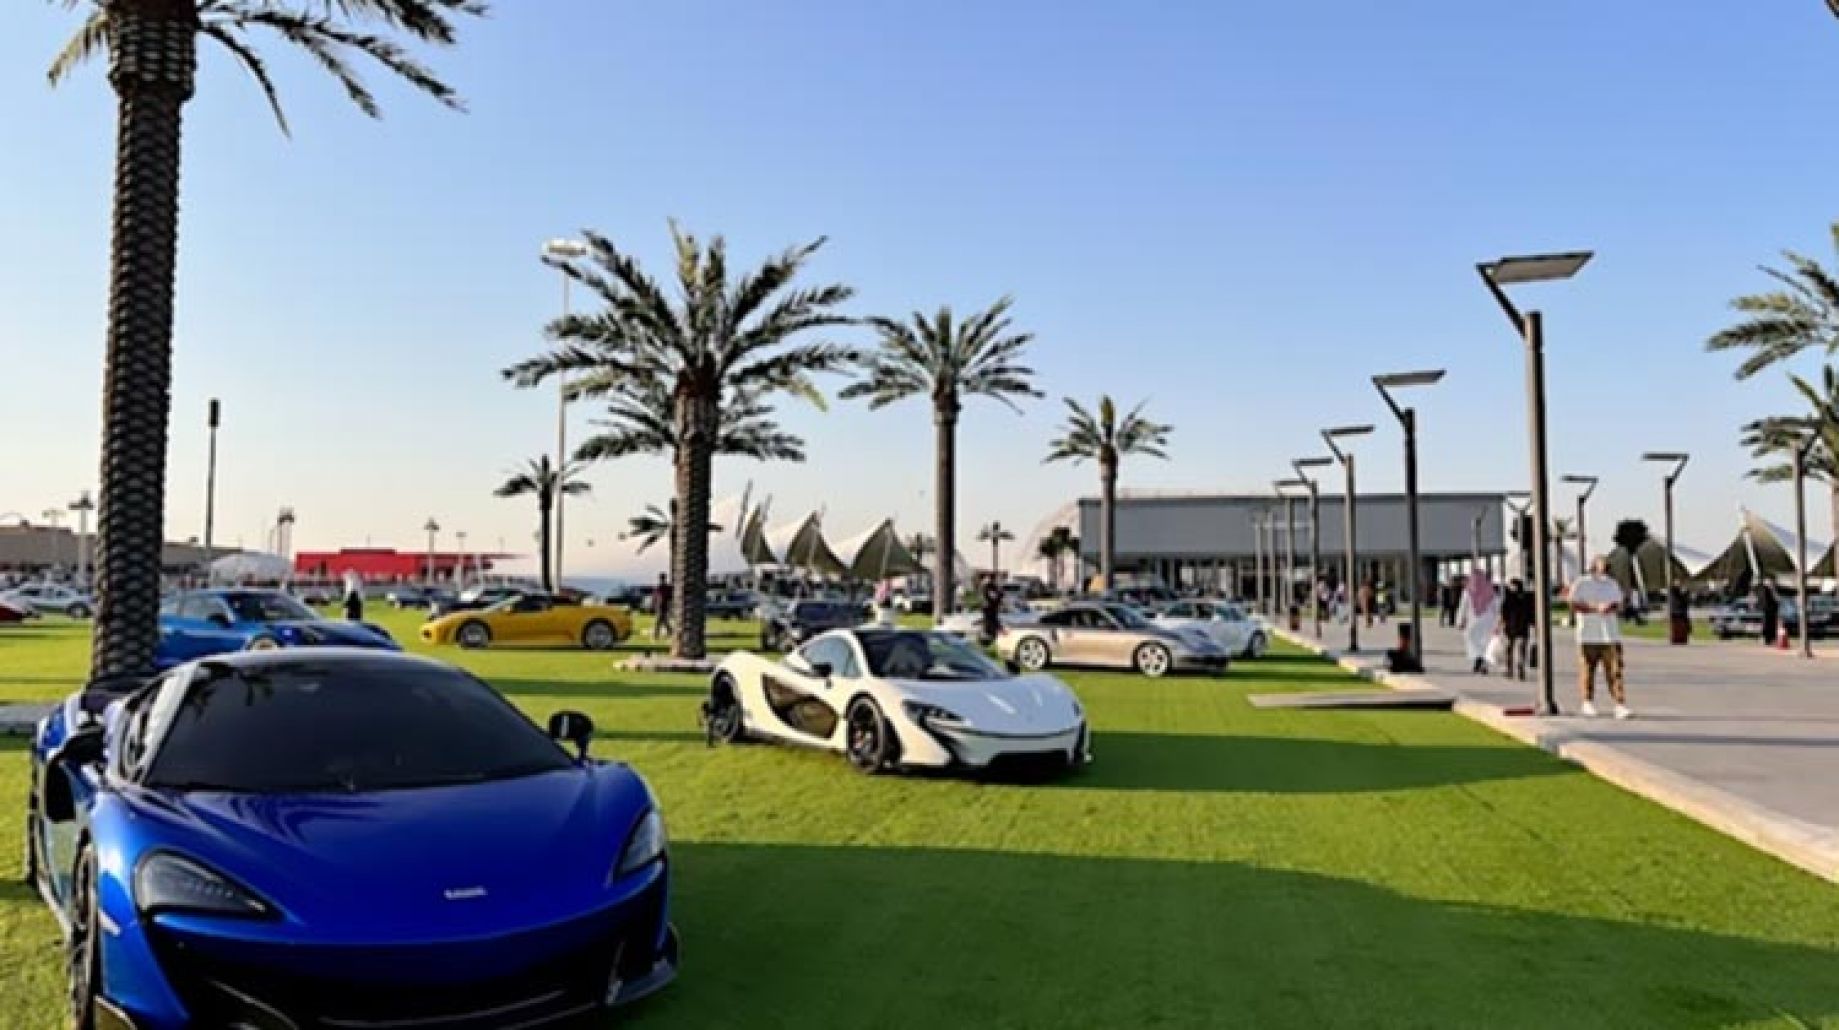 "أغلى سيارة في العالم" بالسعودية الآن.. وتركي آل الشيخ ينشر صورتها معلقاً "في معرض سيارات الرياض بـ٨٠ مليون باوند"